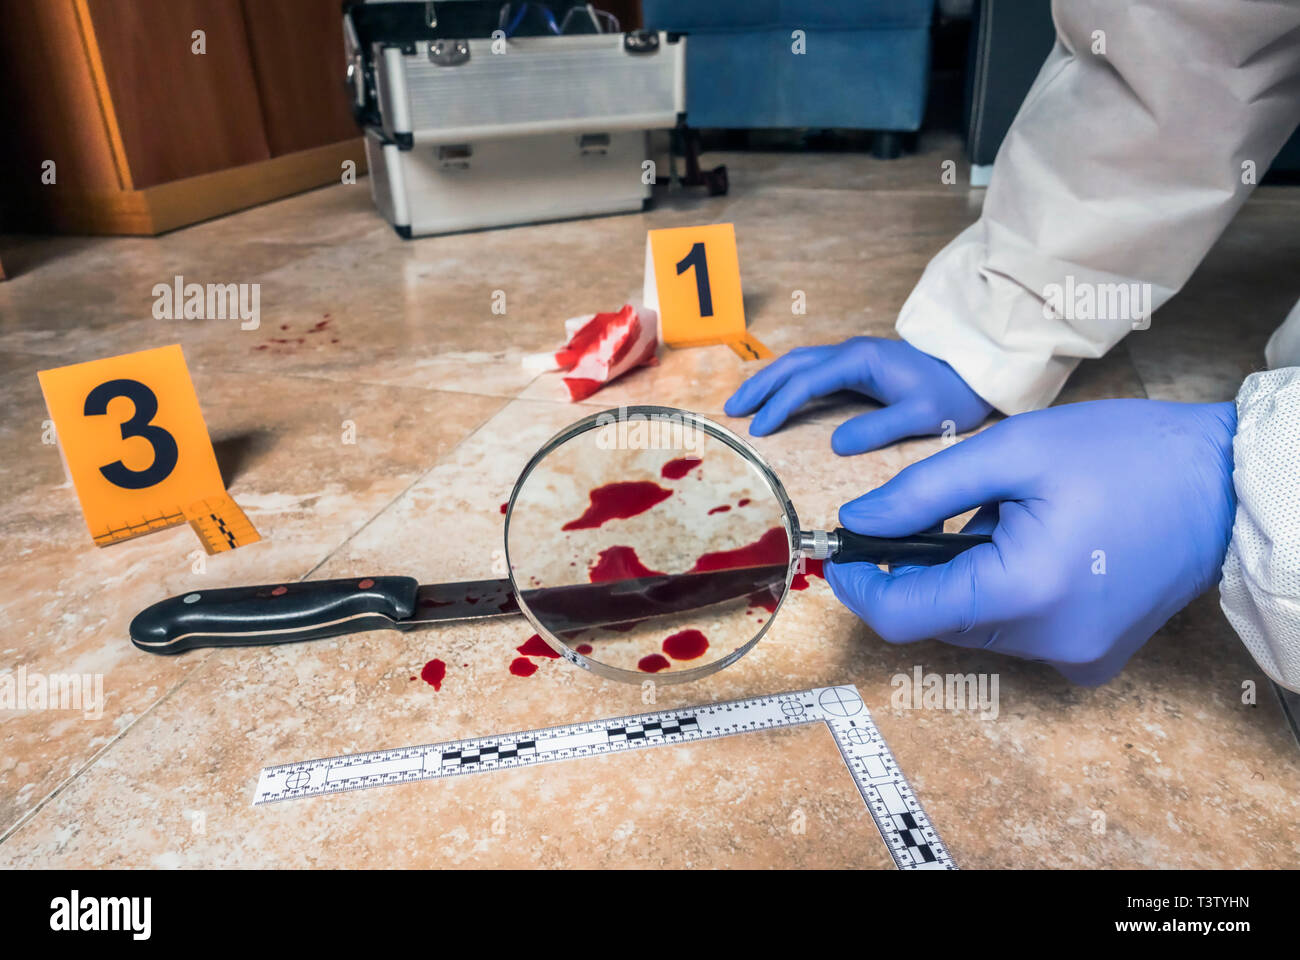 La policía de expertos examinar con lupa un cuchillo con sangre en la escena de un crimen, imagen conceptual Foto de stock